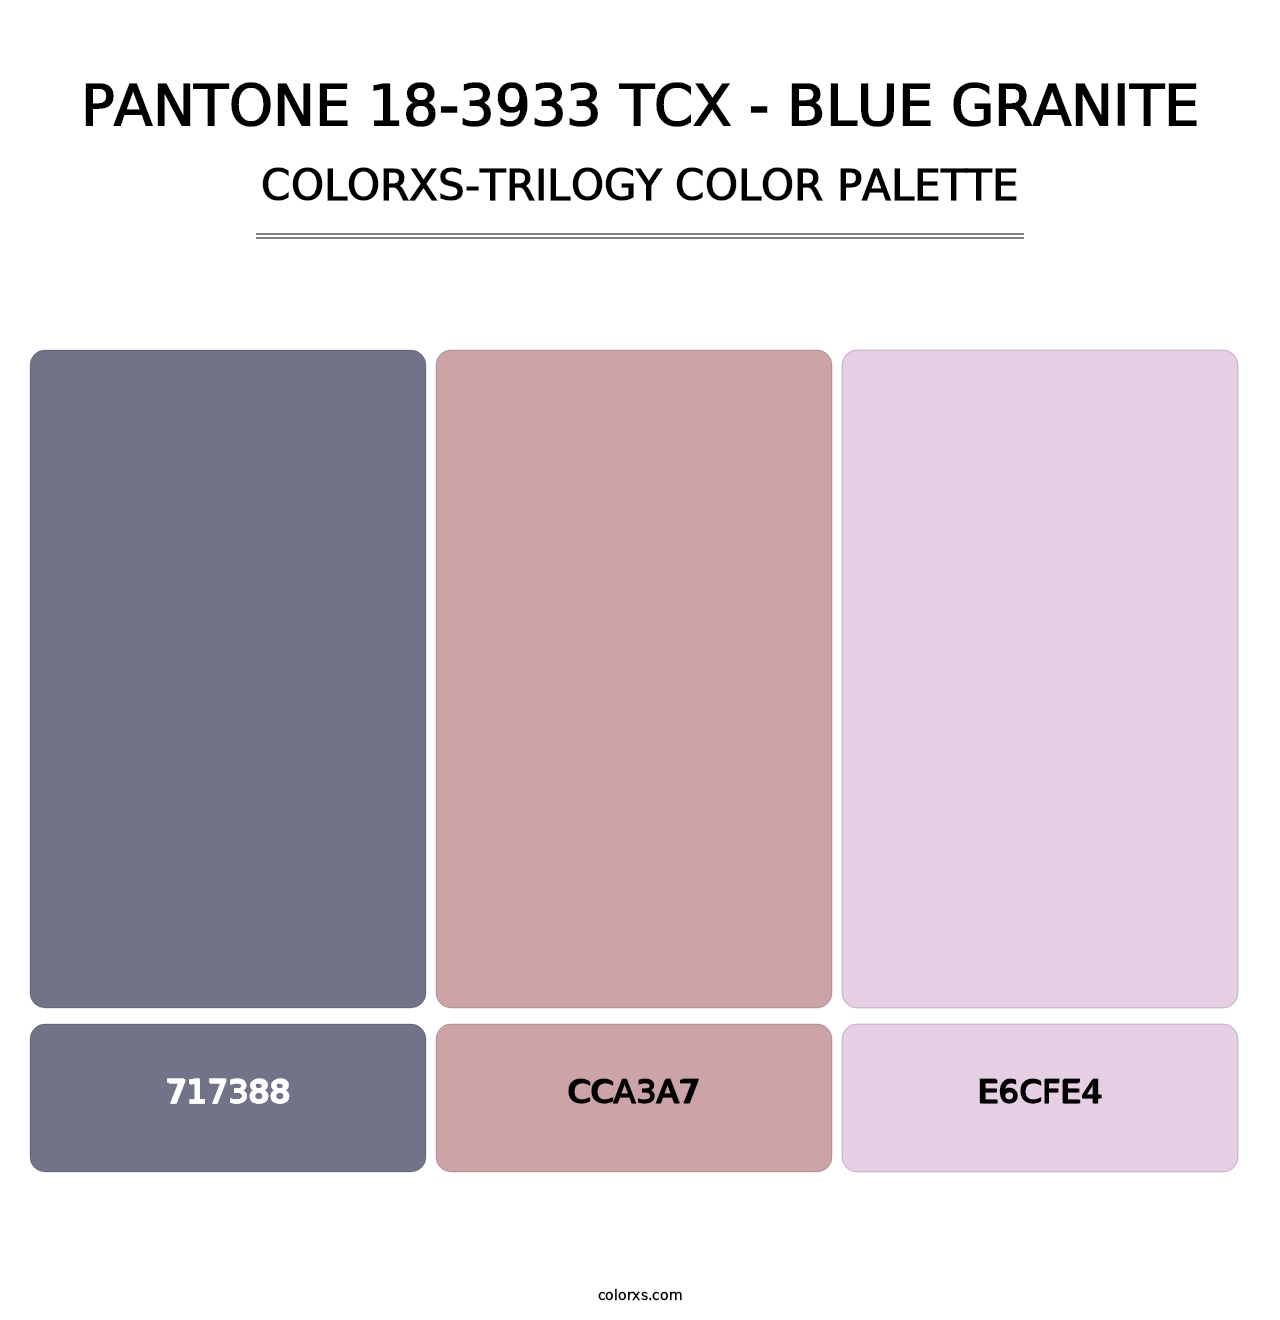 PANTONE 18-3933 TCX - Blue Granite - Colorxs Trilogy Palette